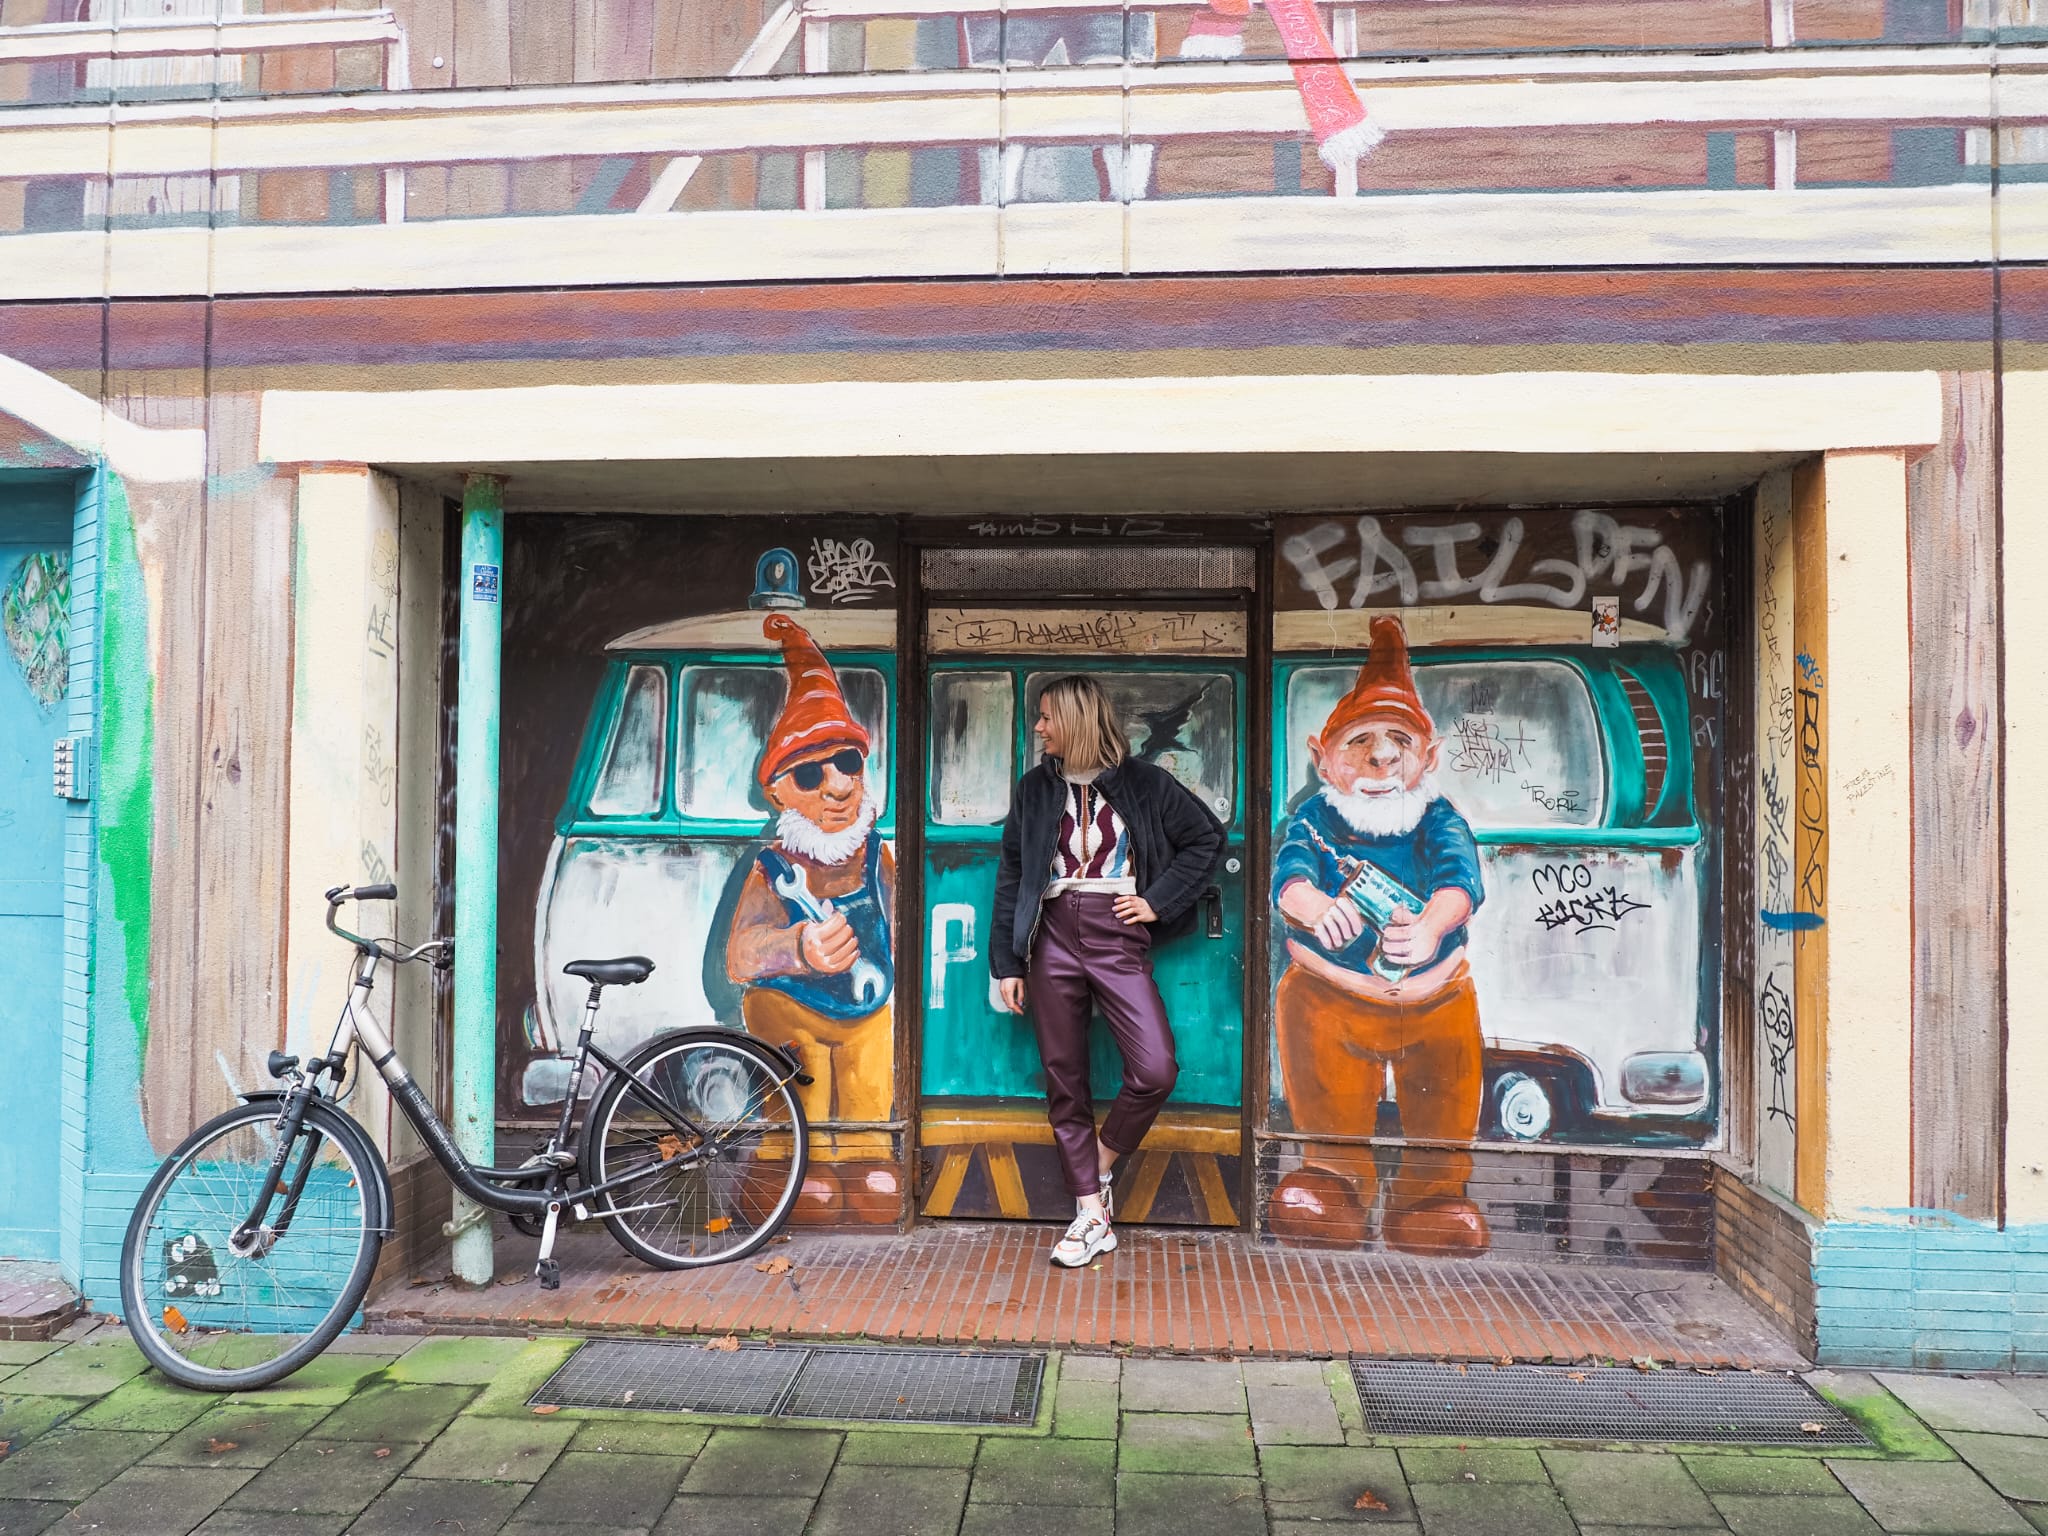 De Kiefernstrasse is een walhalla voor liefhebbers van street art